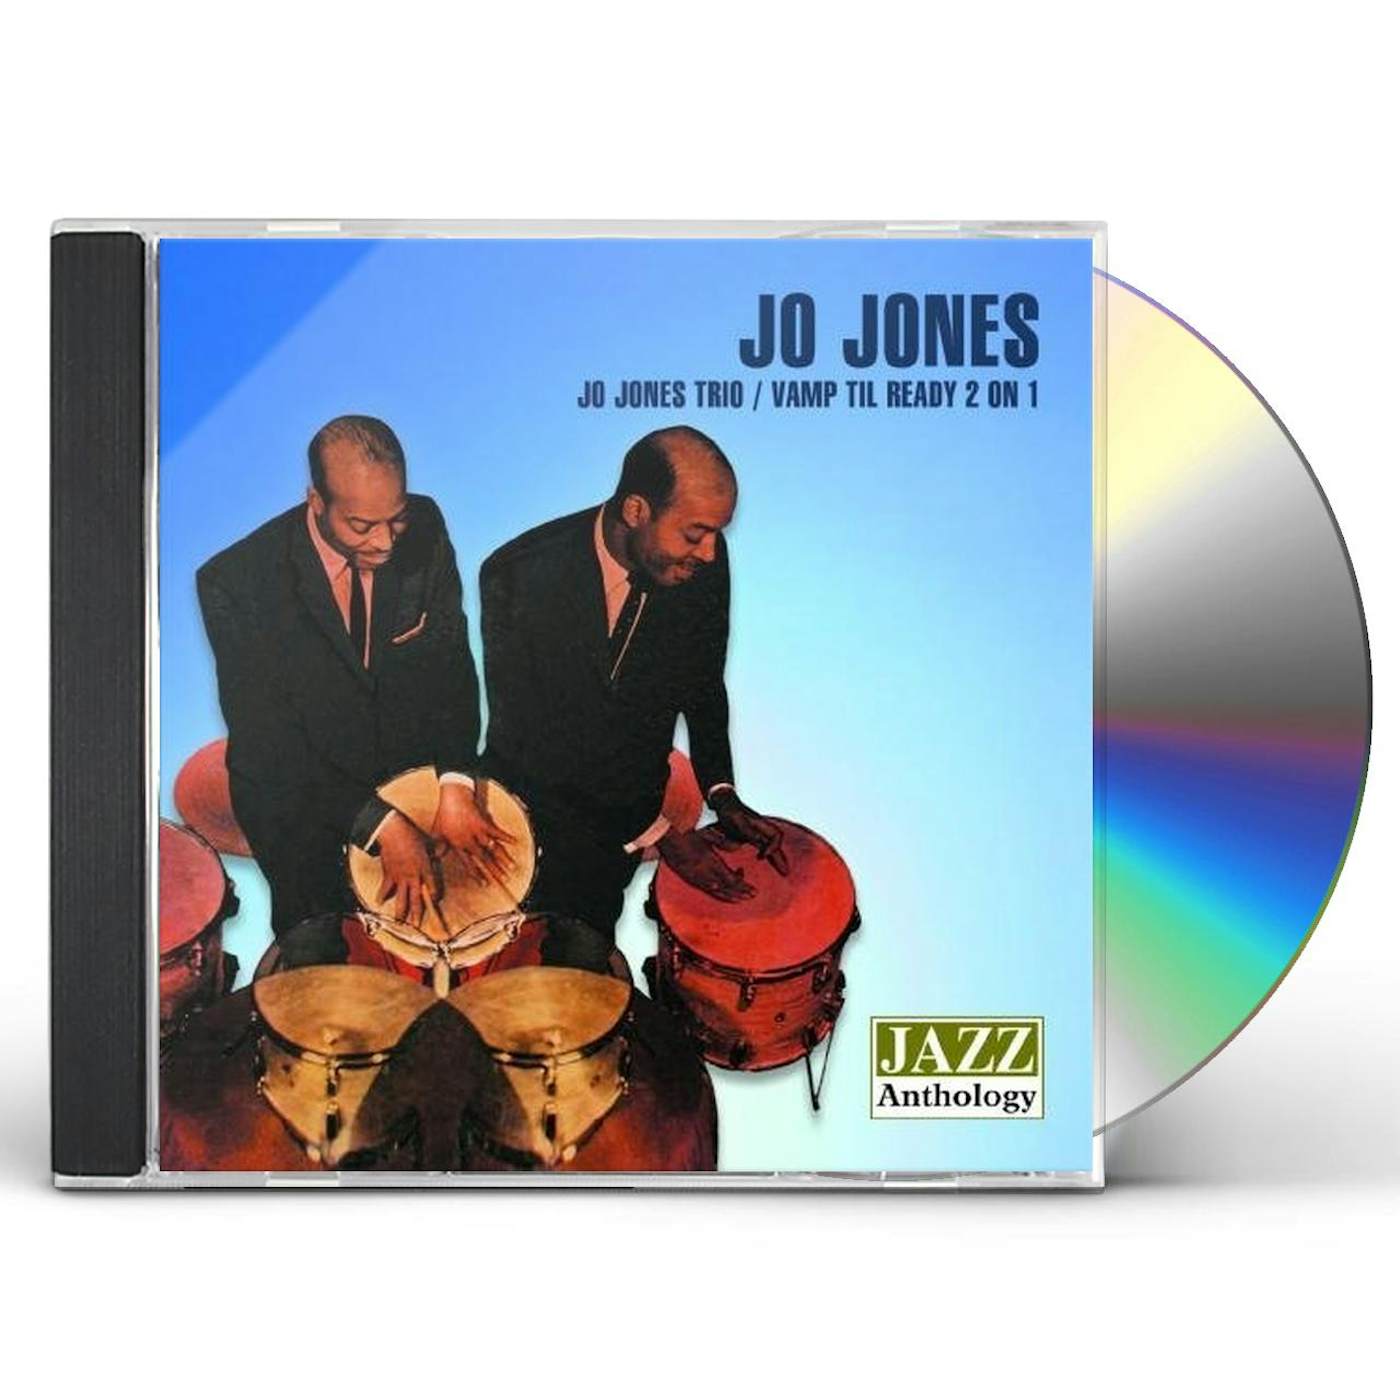 JO JONES TRIO / VAMP TIL READY 2 ON 1 CD